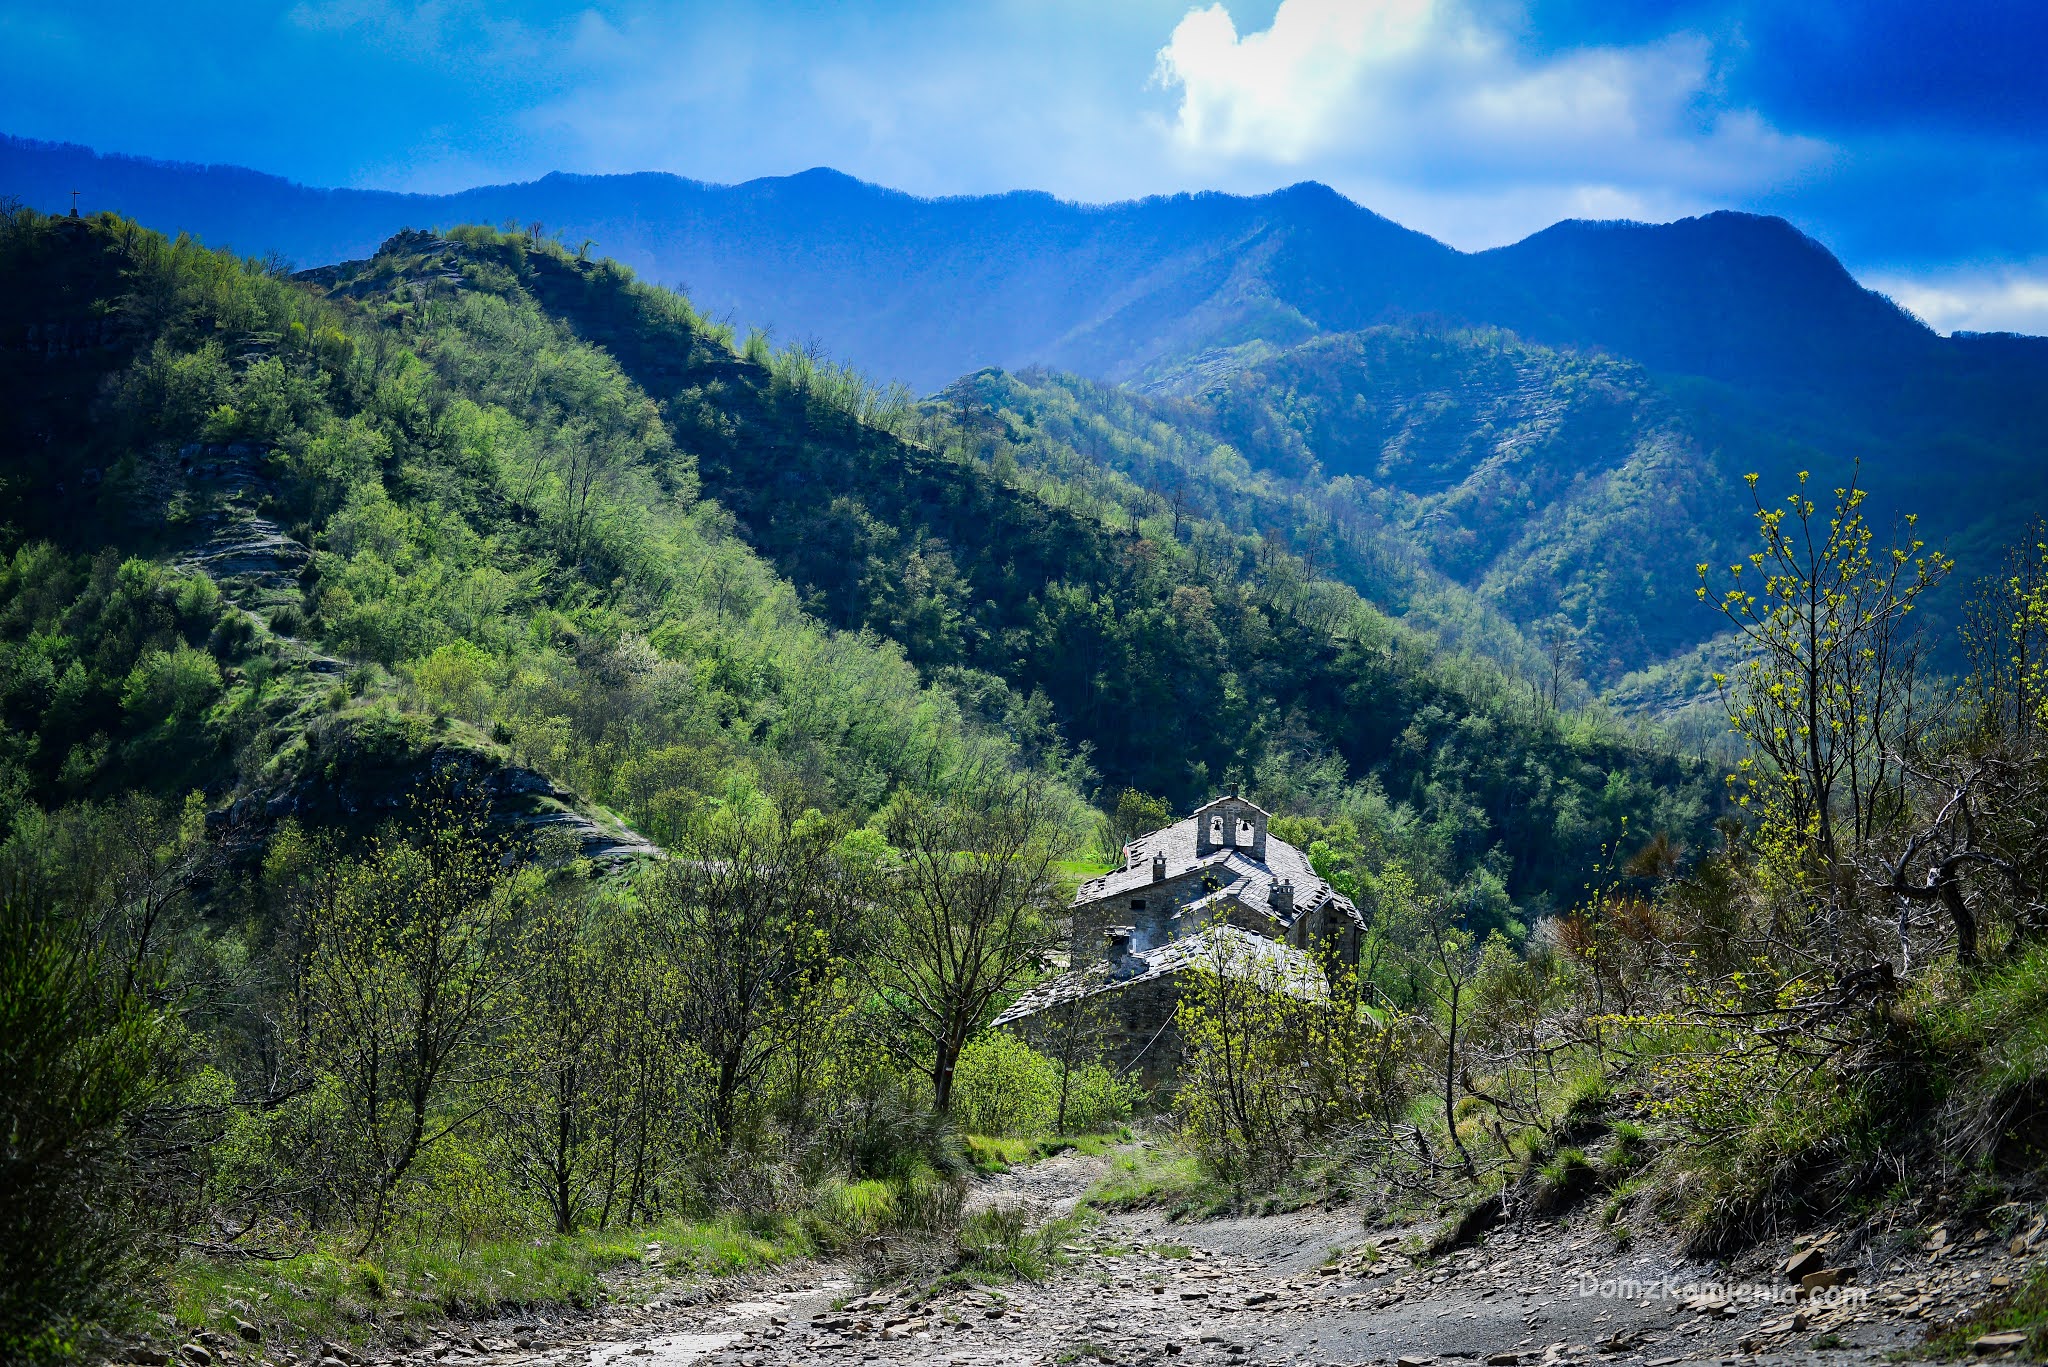 Dom z Kamienia blog o życiu w Toskanii, trekking, Marradi